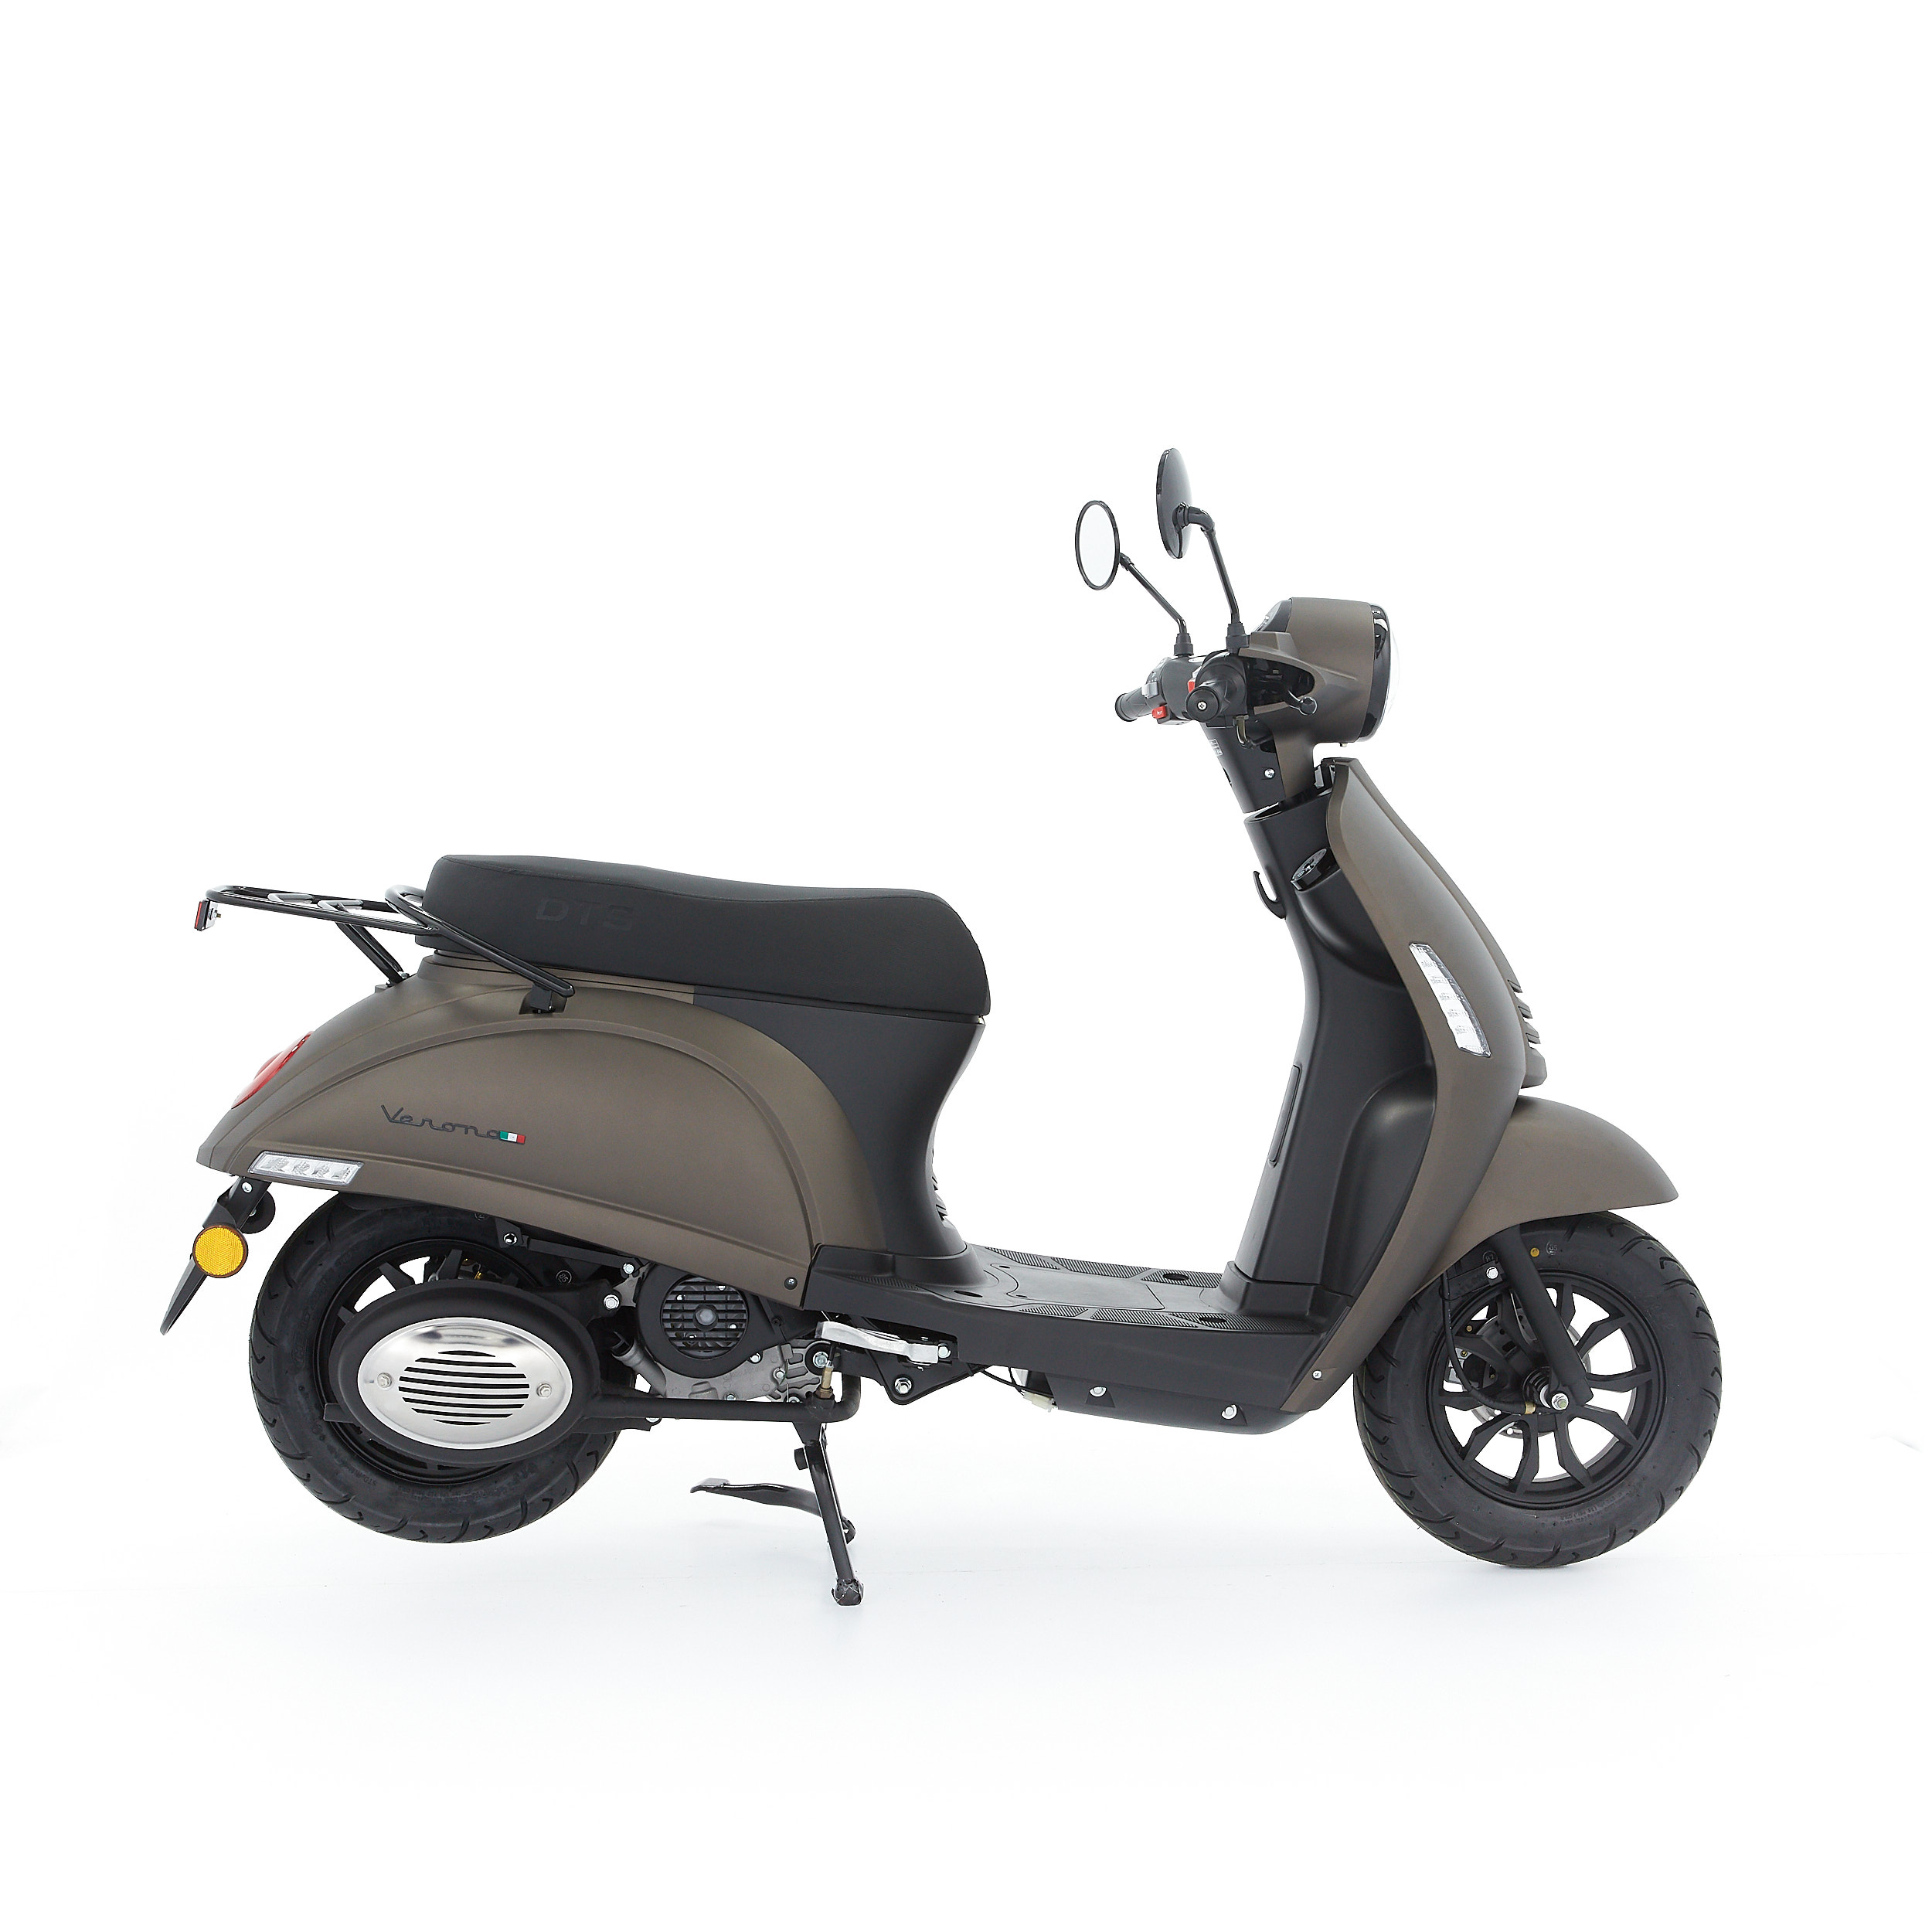 Vooruitzien Opnemen door elkaar haspelen DTS Verona Mat titanium scooter kopen bij Central Scooters